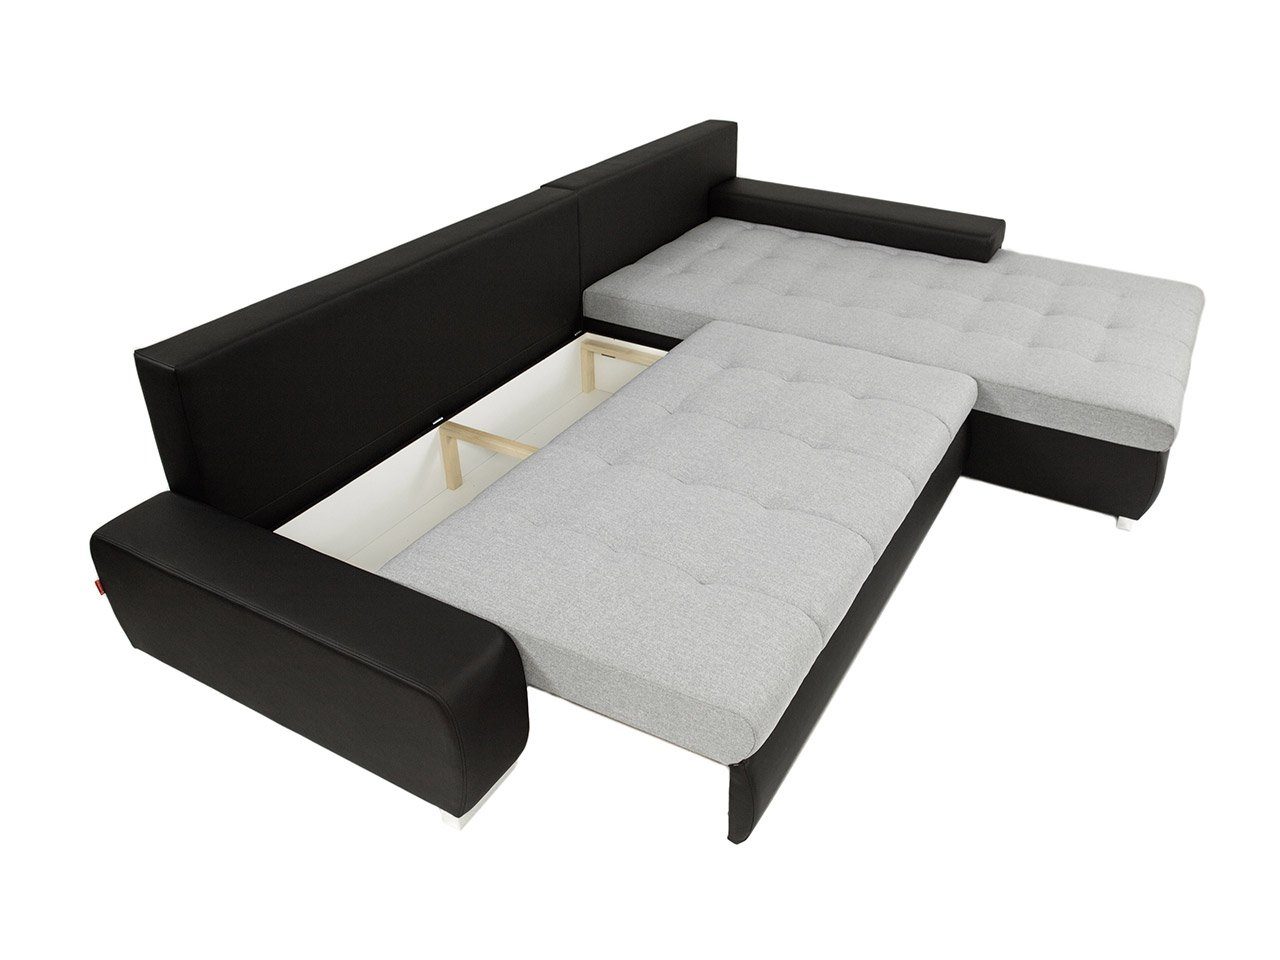 mane Bettkasten, Orkan Universal L-Sofa, Elegante und Premium, mit Schlaffunktion MIRJAN24 Ecksofa